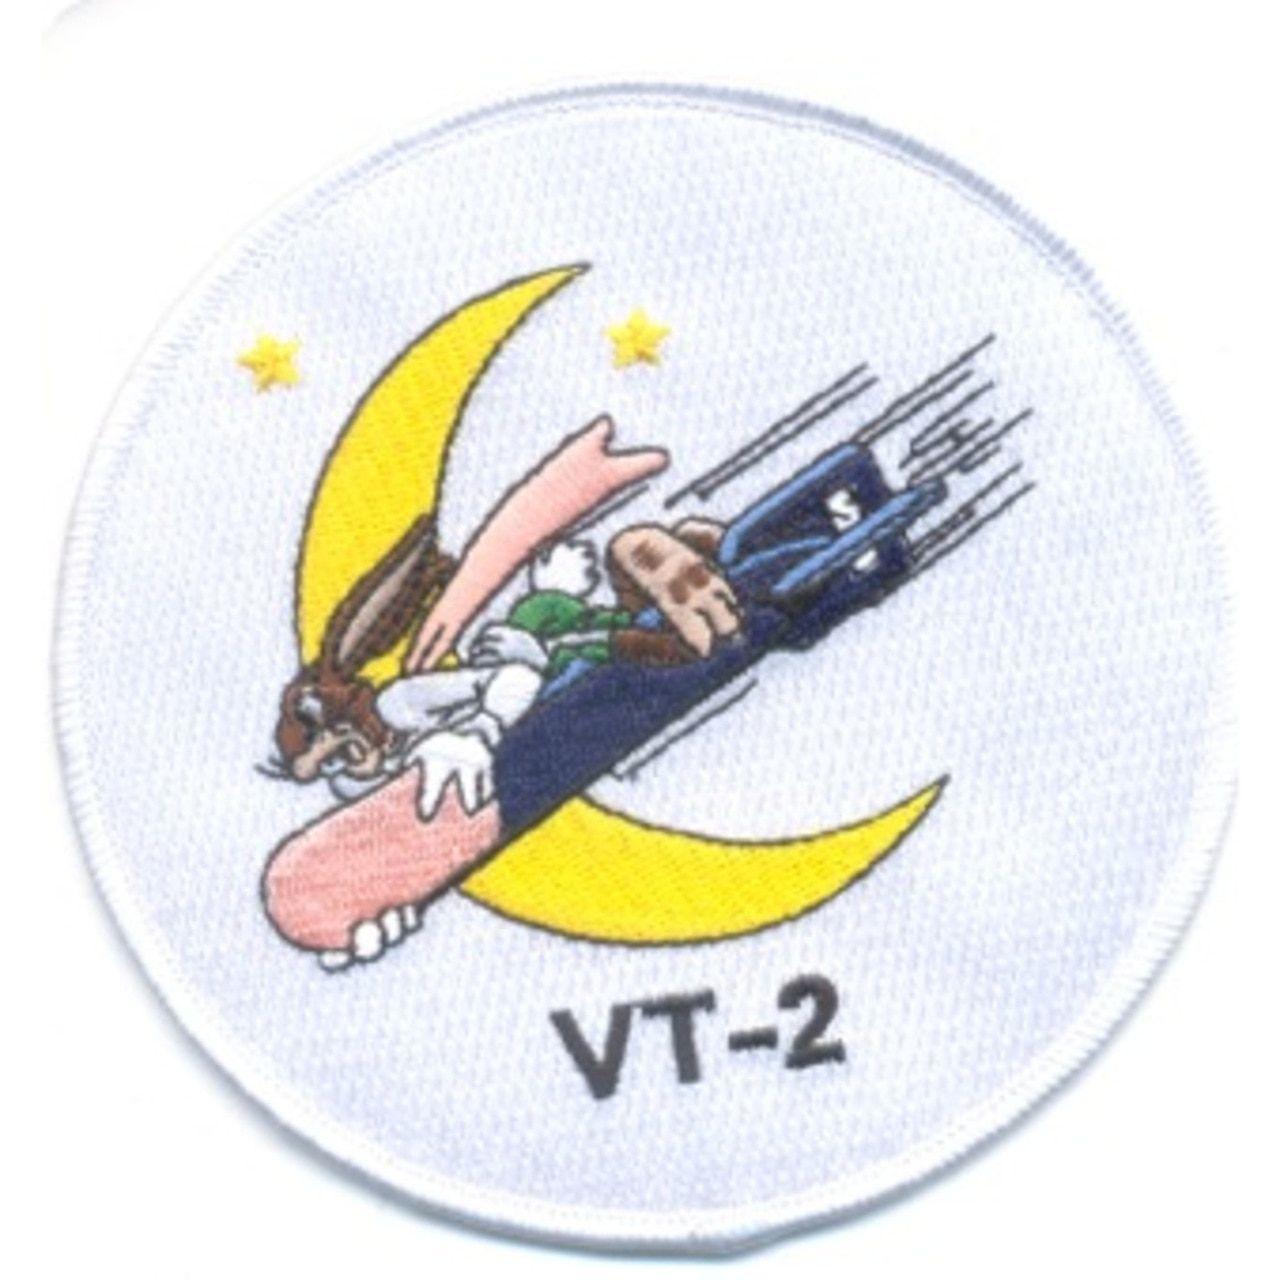 Vt-2 Logo - VT-2 Torpedo Squadron Patch